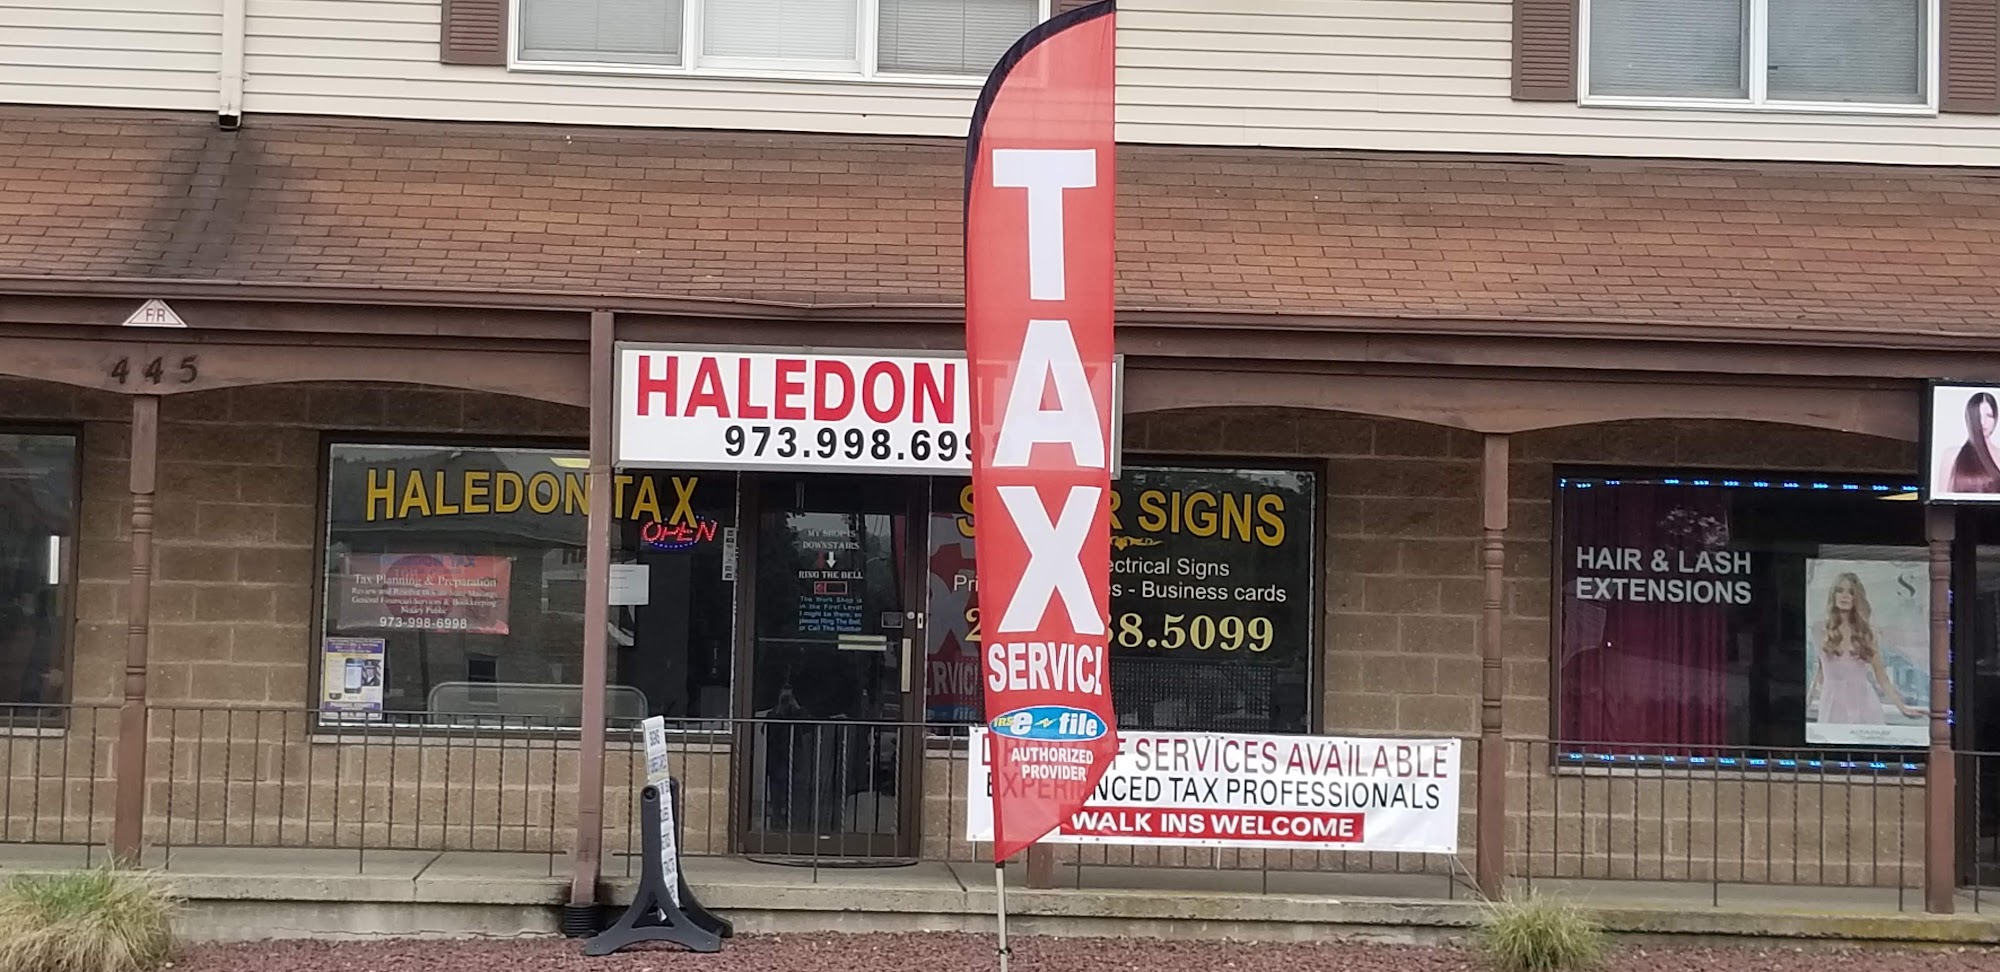 Haledon Tax & Financial Services 445 Haledon Ave STE 1, Haledon New Jersey 07508